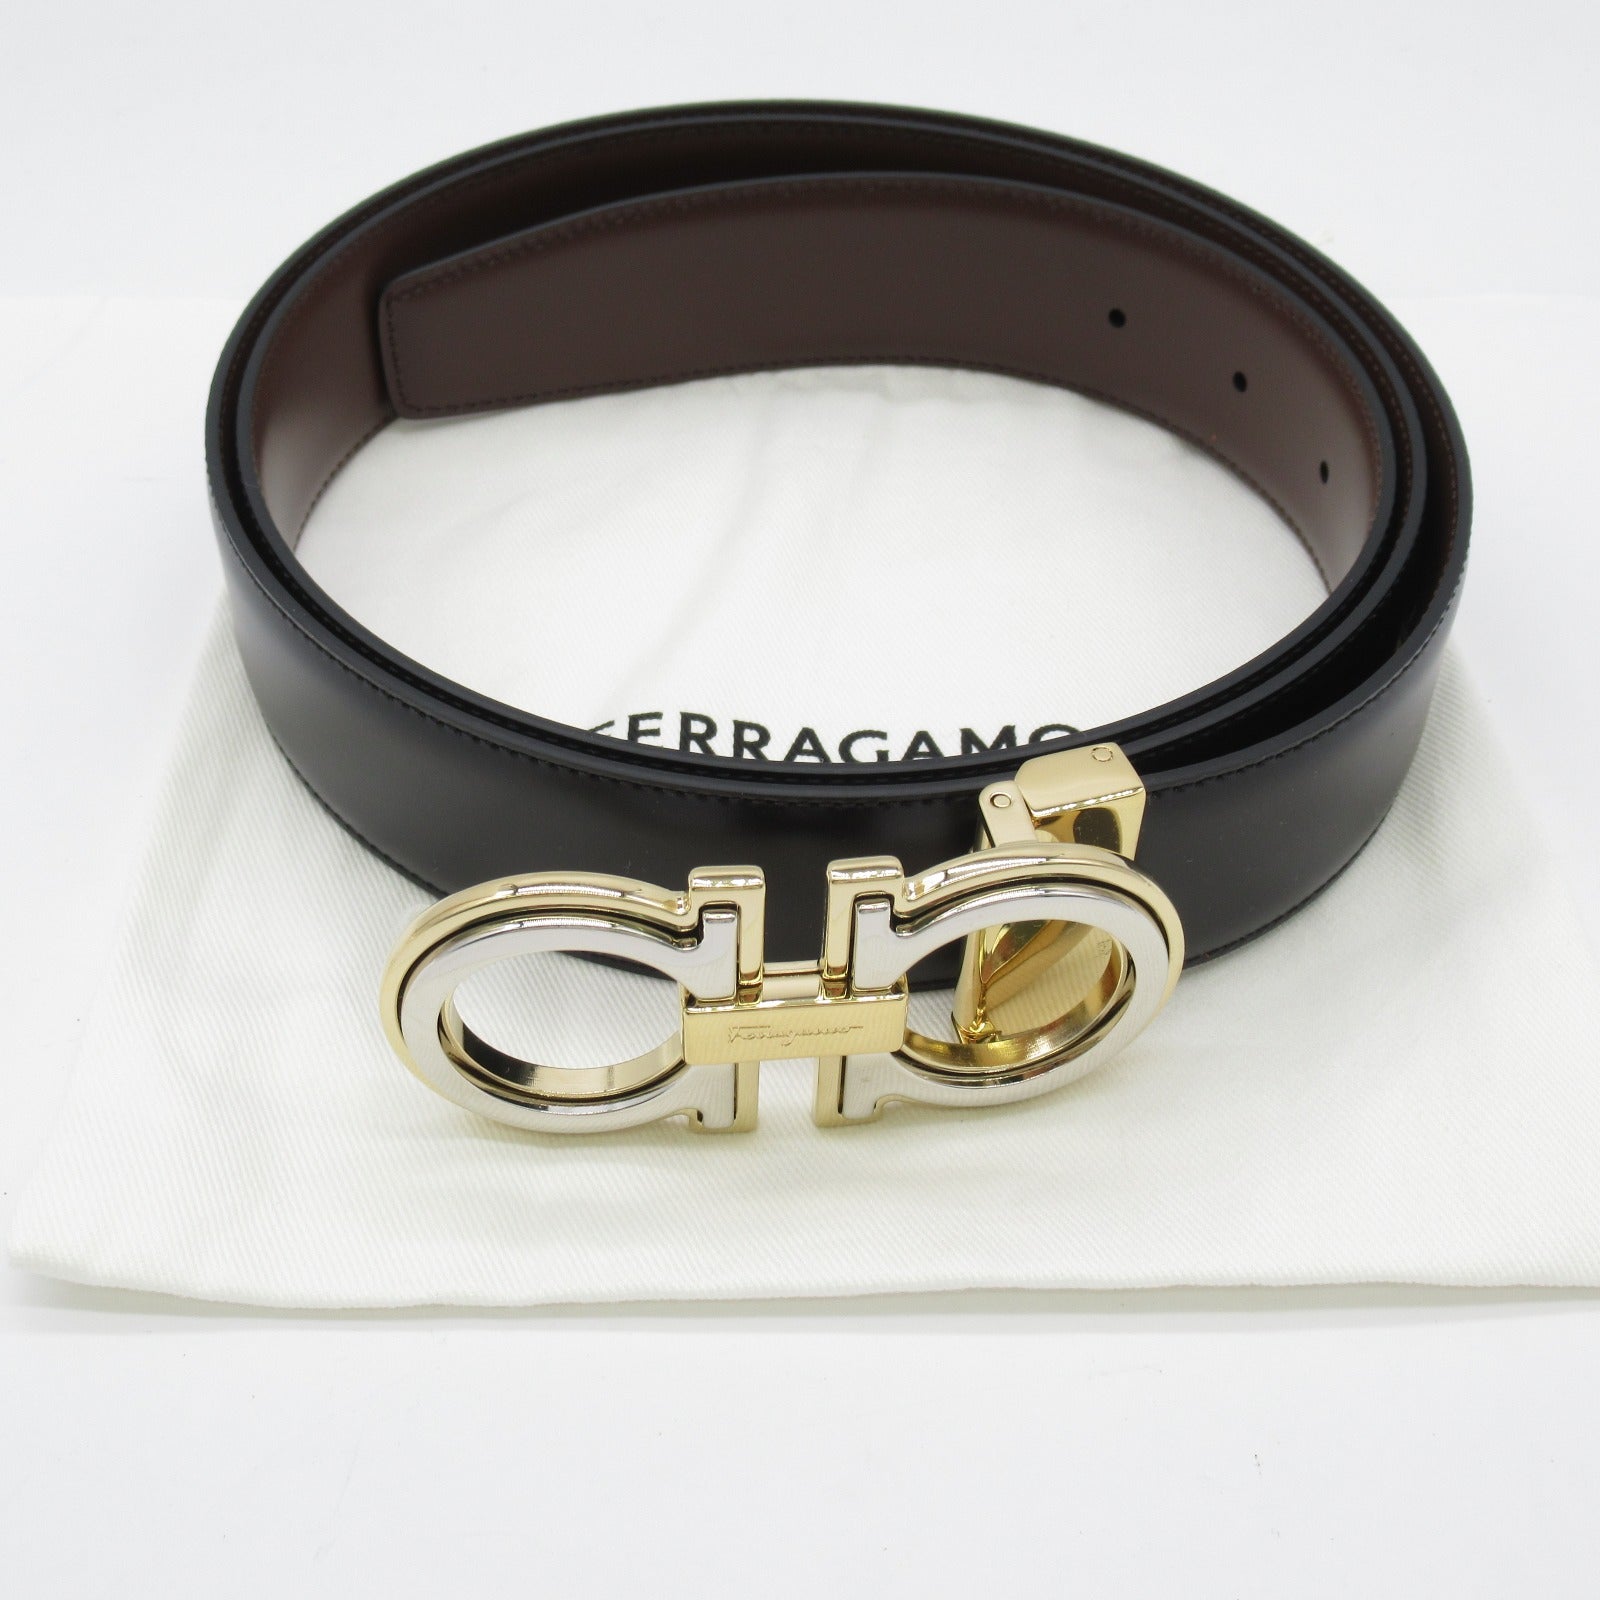 Salvatore Ferragamo Belt Belt Clothes For Mens Black/Brown 67A254764187C115